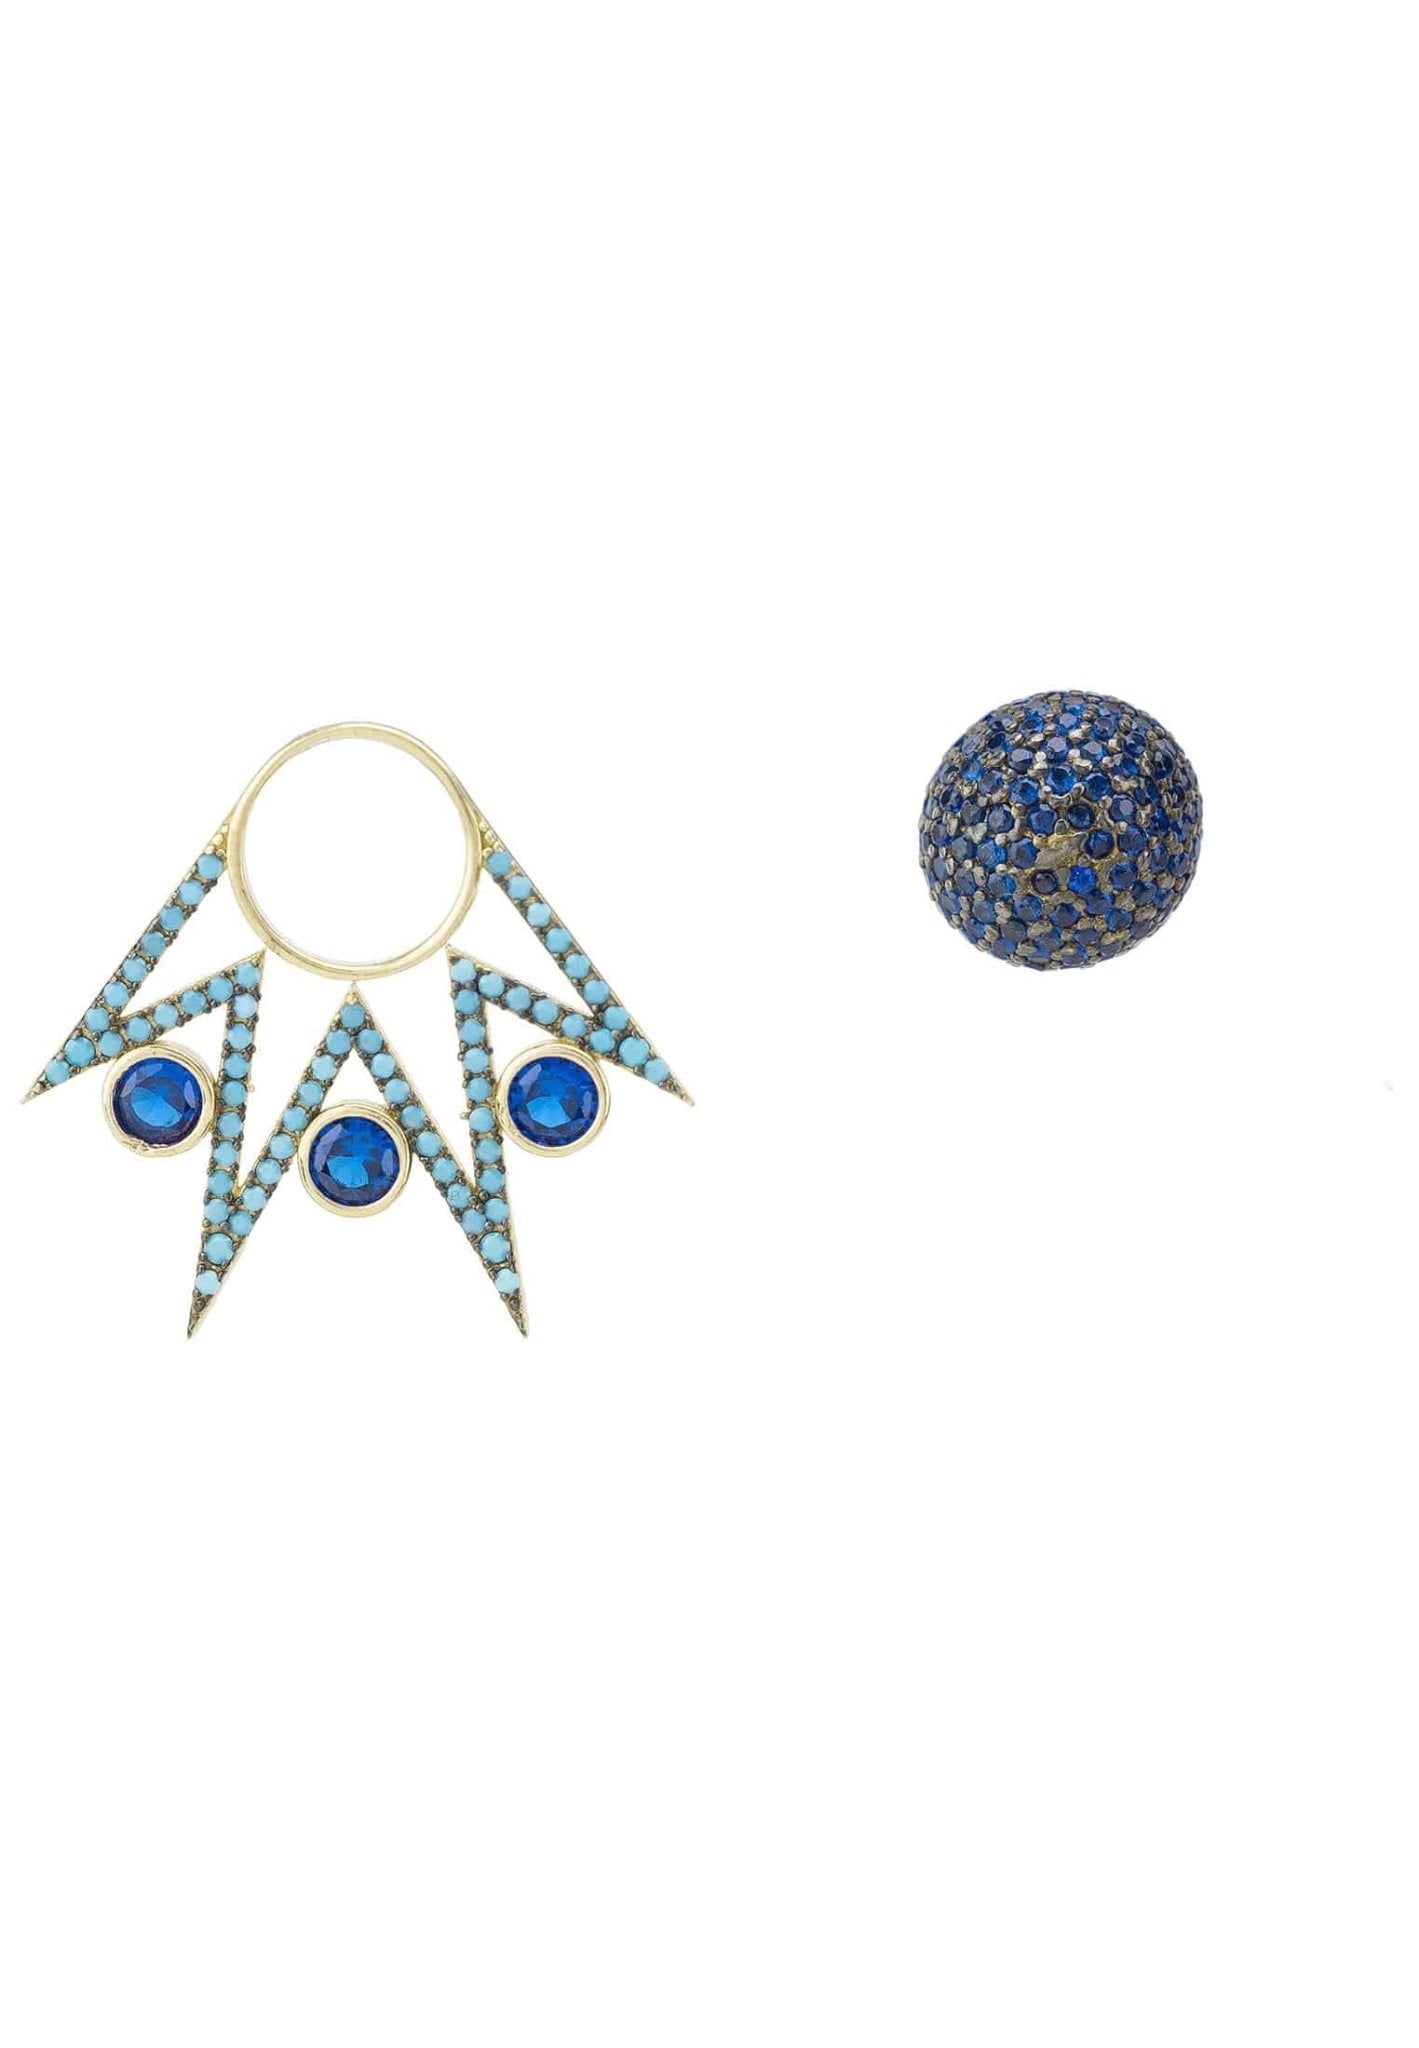 Jester Ear Jacket Convertible Earrings Blue Gold - LATELITA Earrings